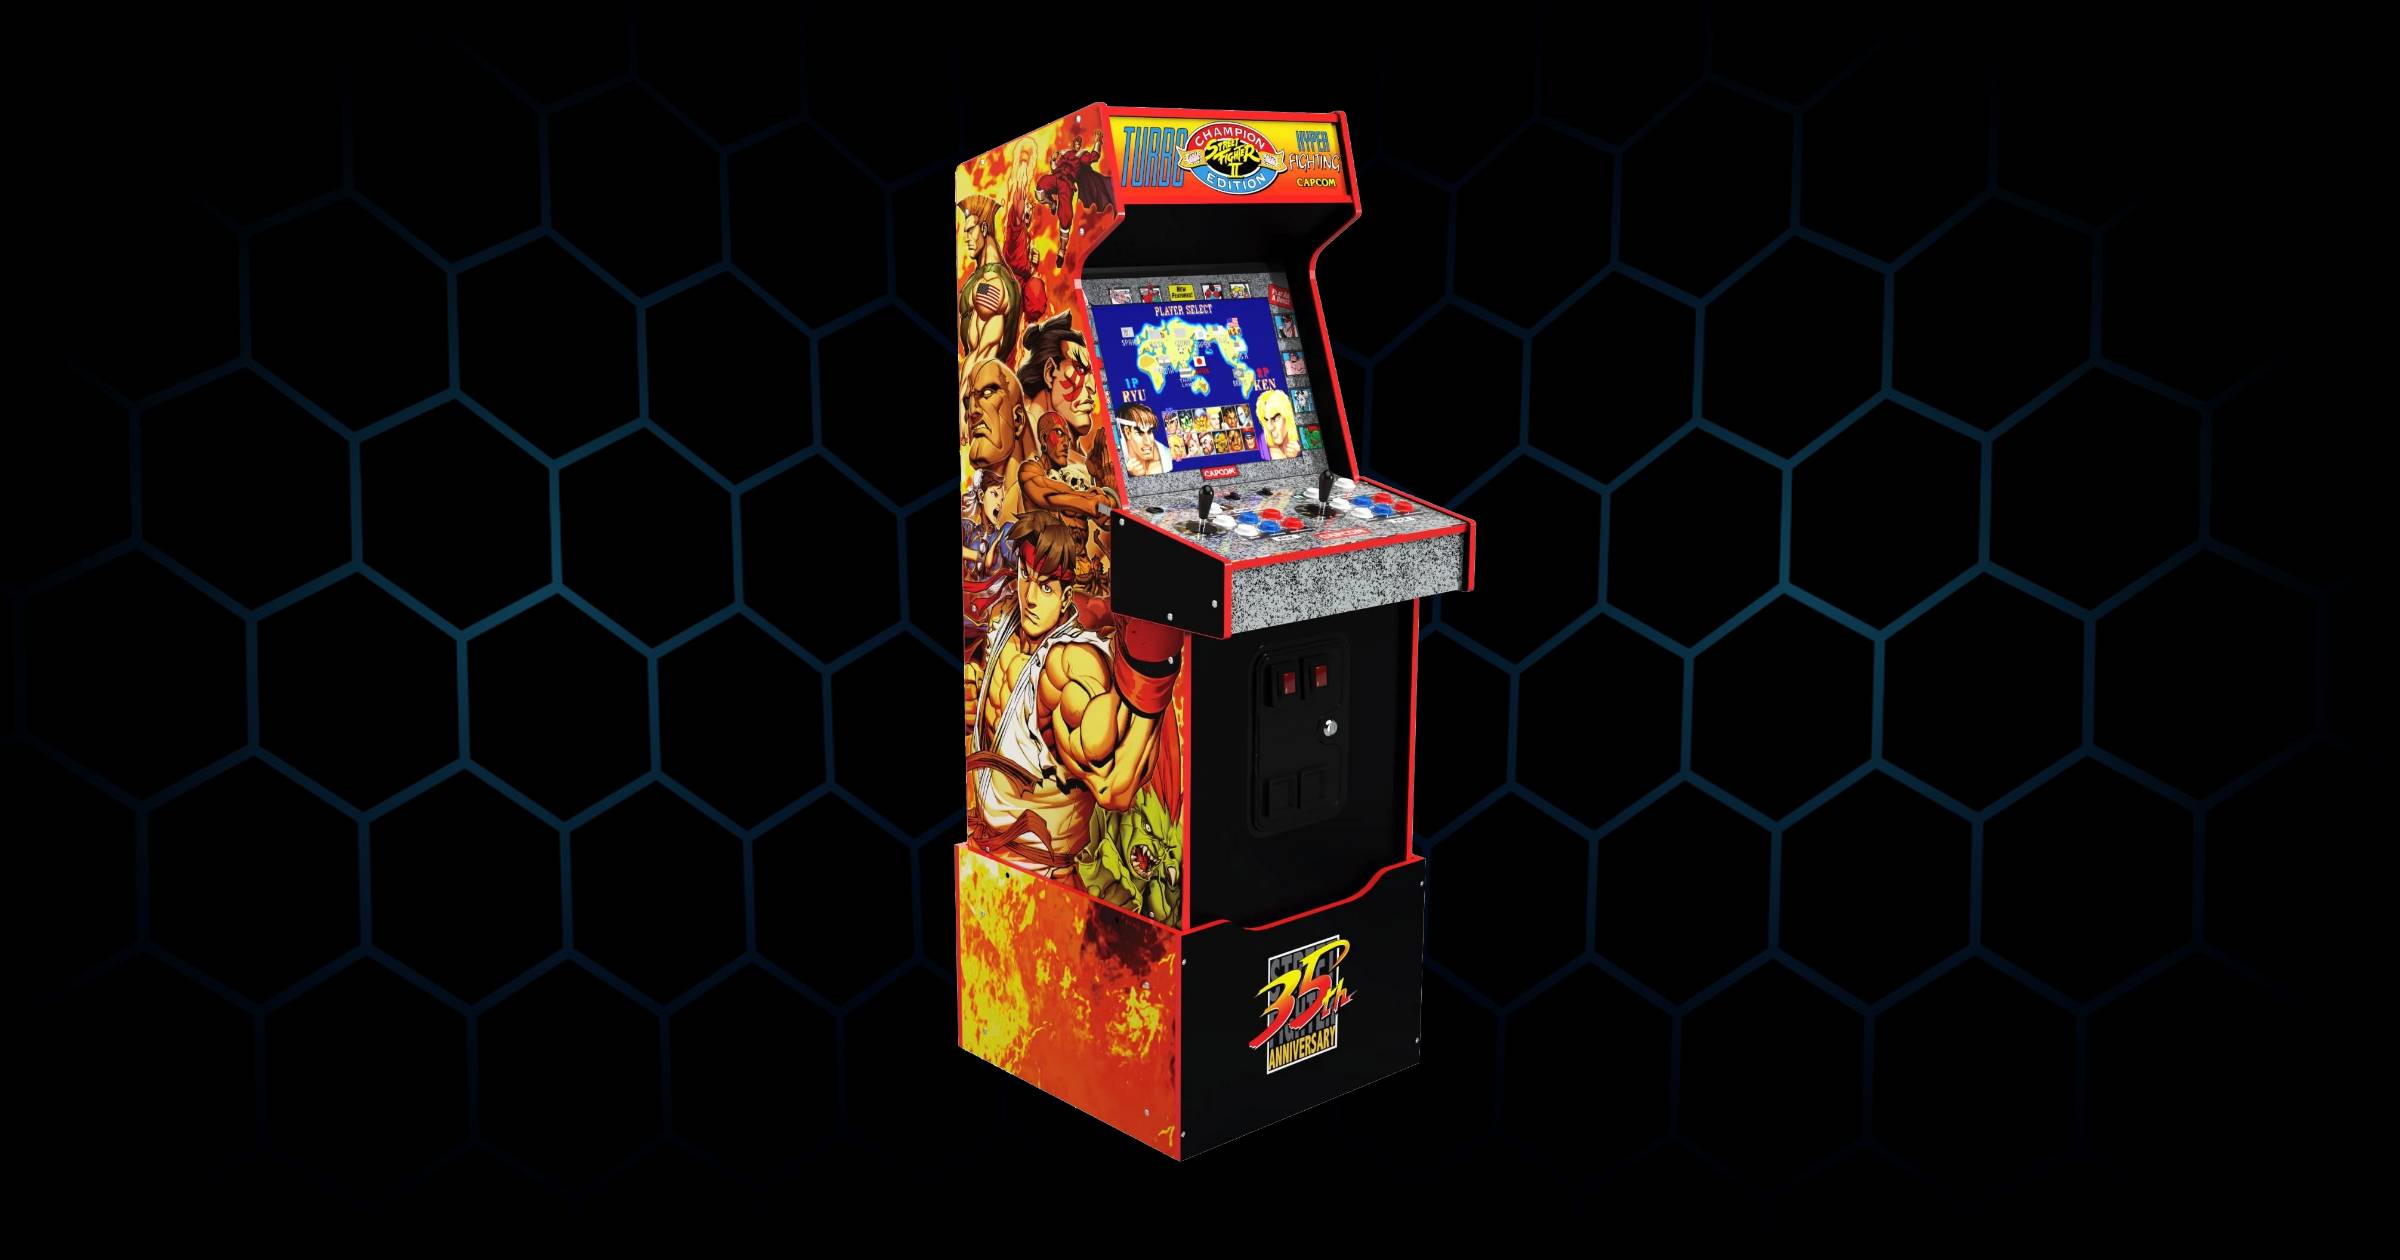 Arcade1Up Arcade Machine From Arcade Gamer